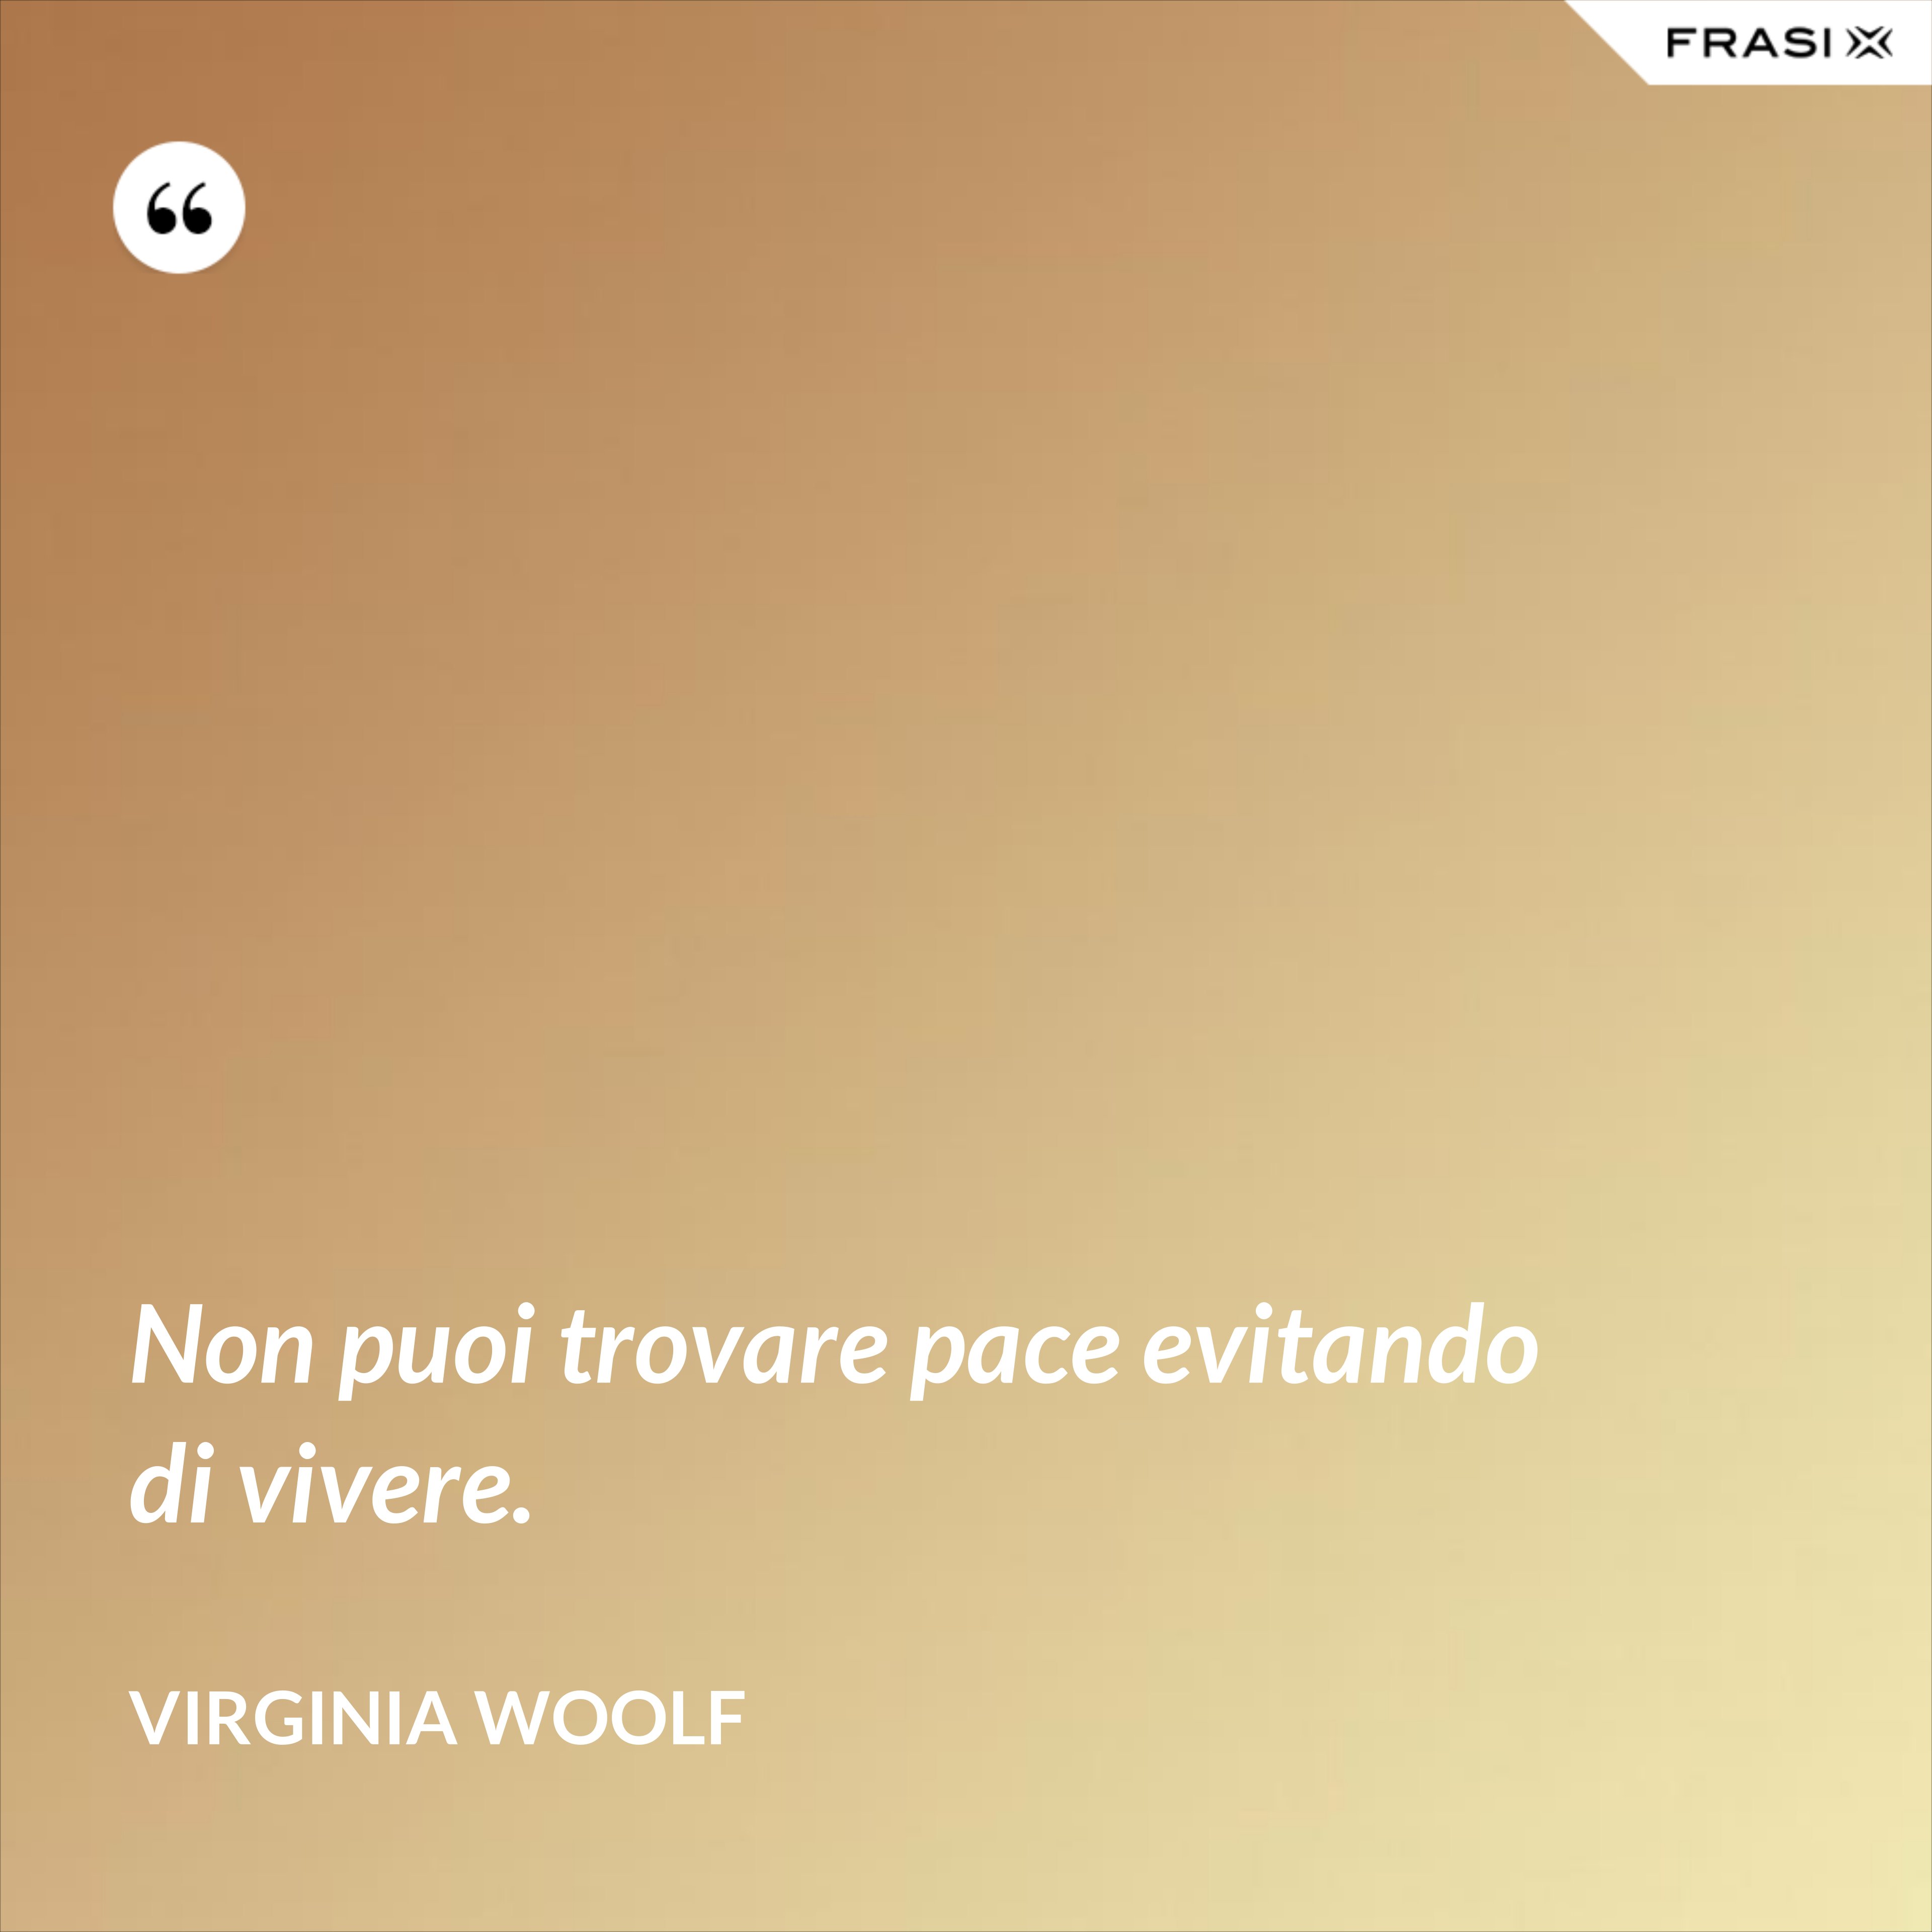 Non puoi trovare pace evitando di vivere. - Virginia Woolf